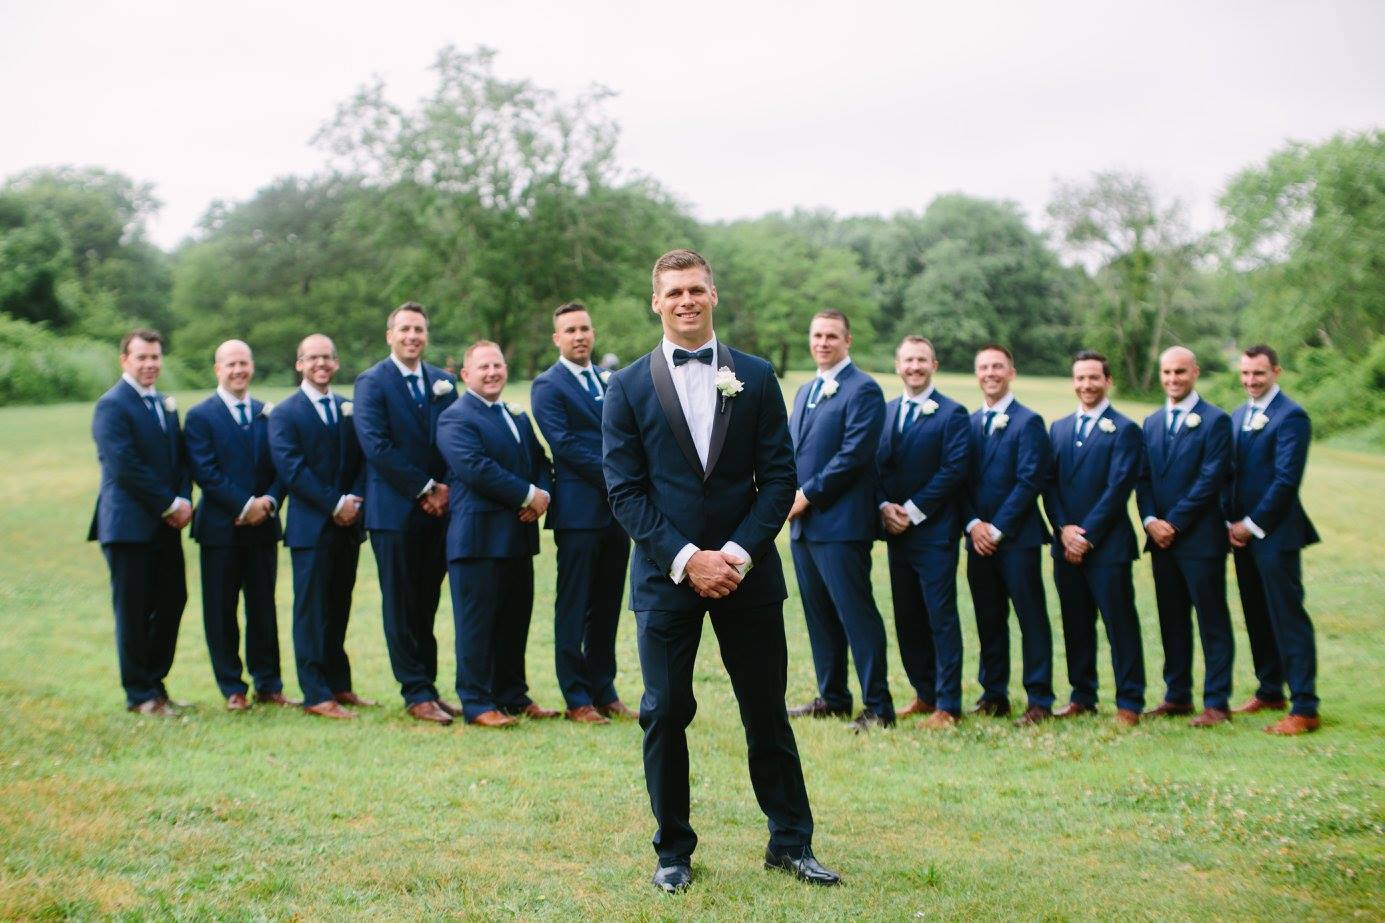 Wedding & Groomsmen Suits for Men